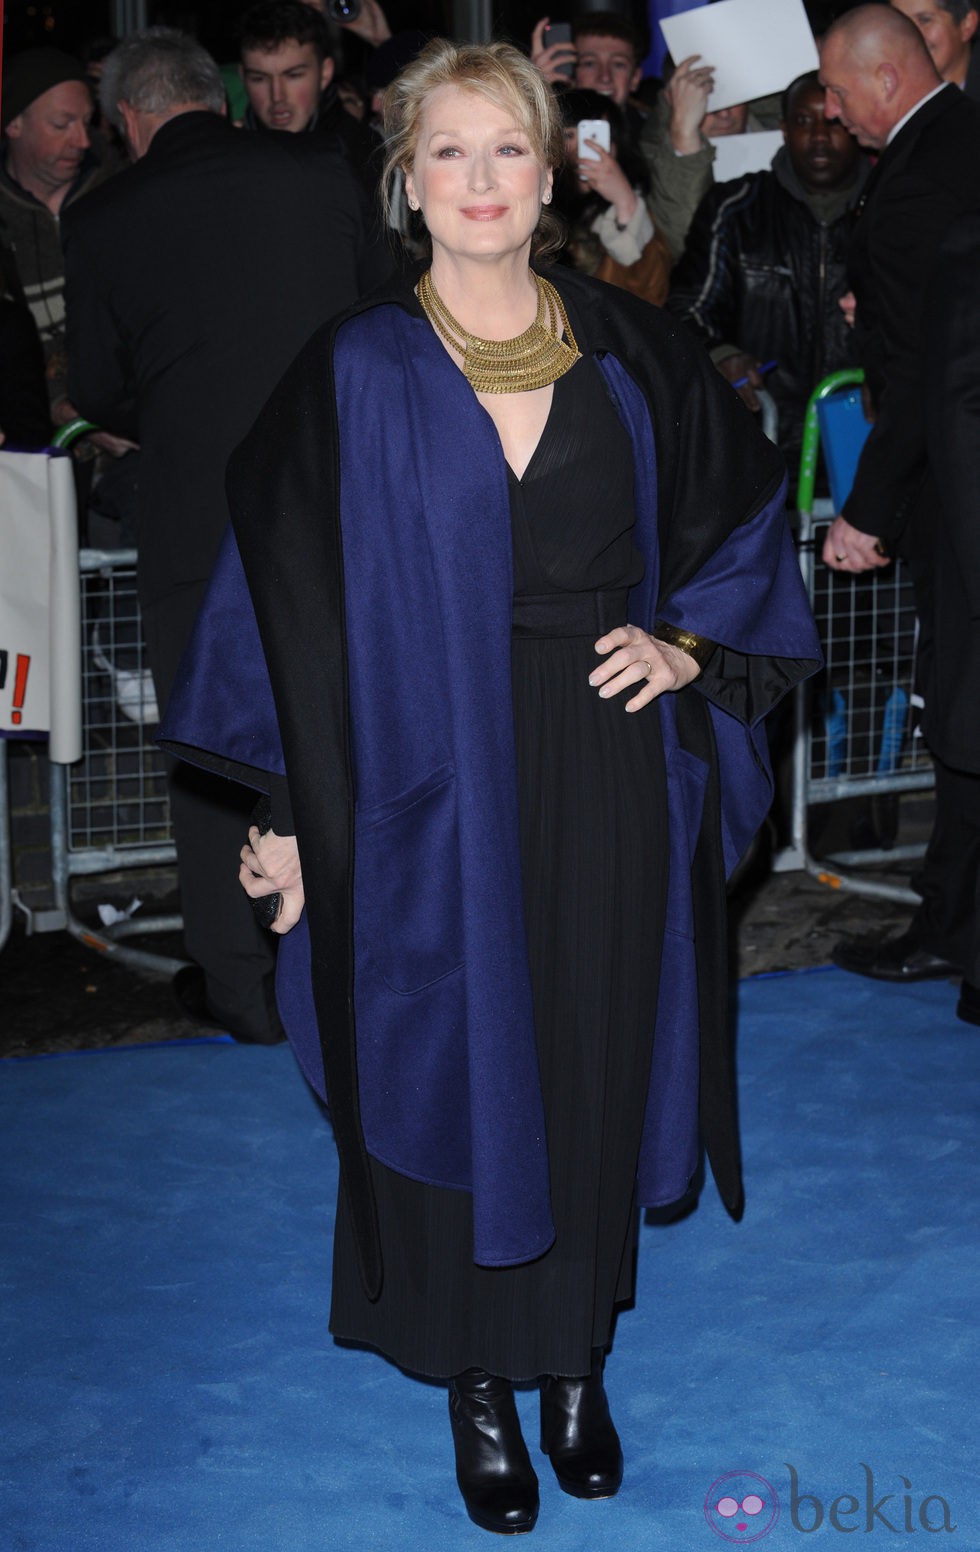 Meryl Streep en el estreno de 'La dama de hierro' en Londres